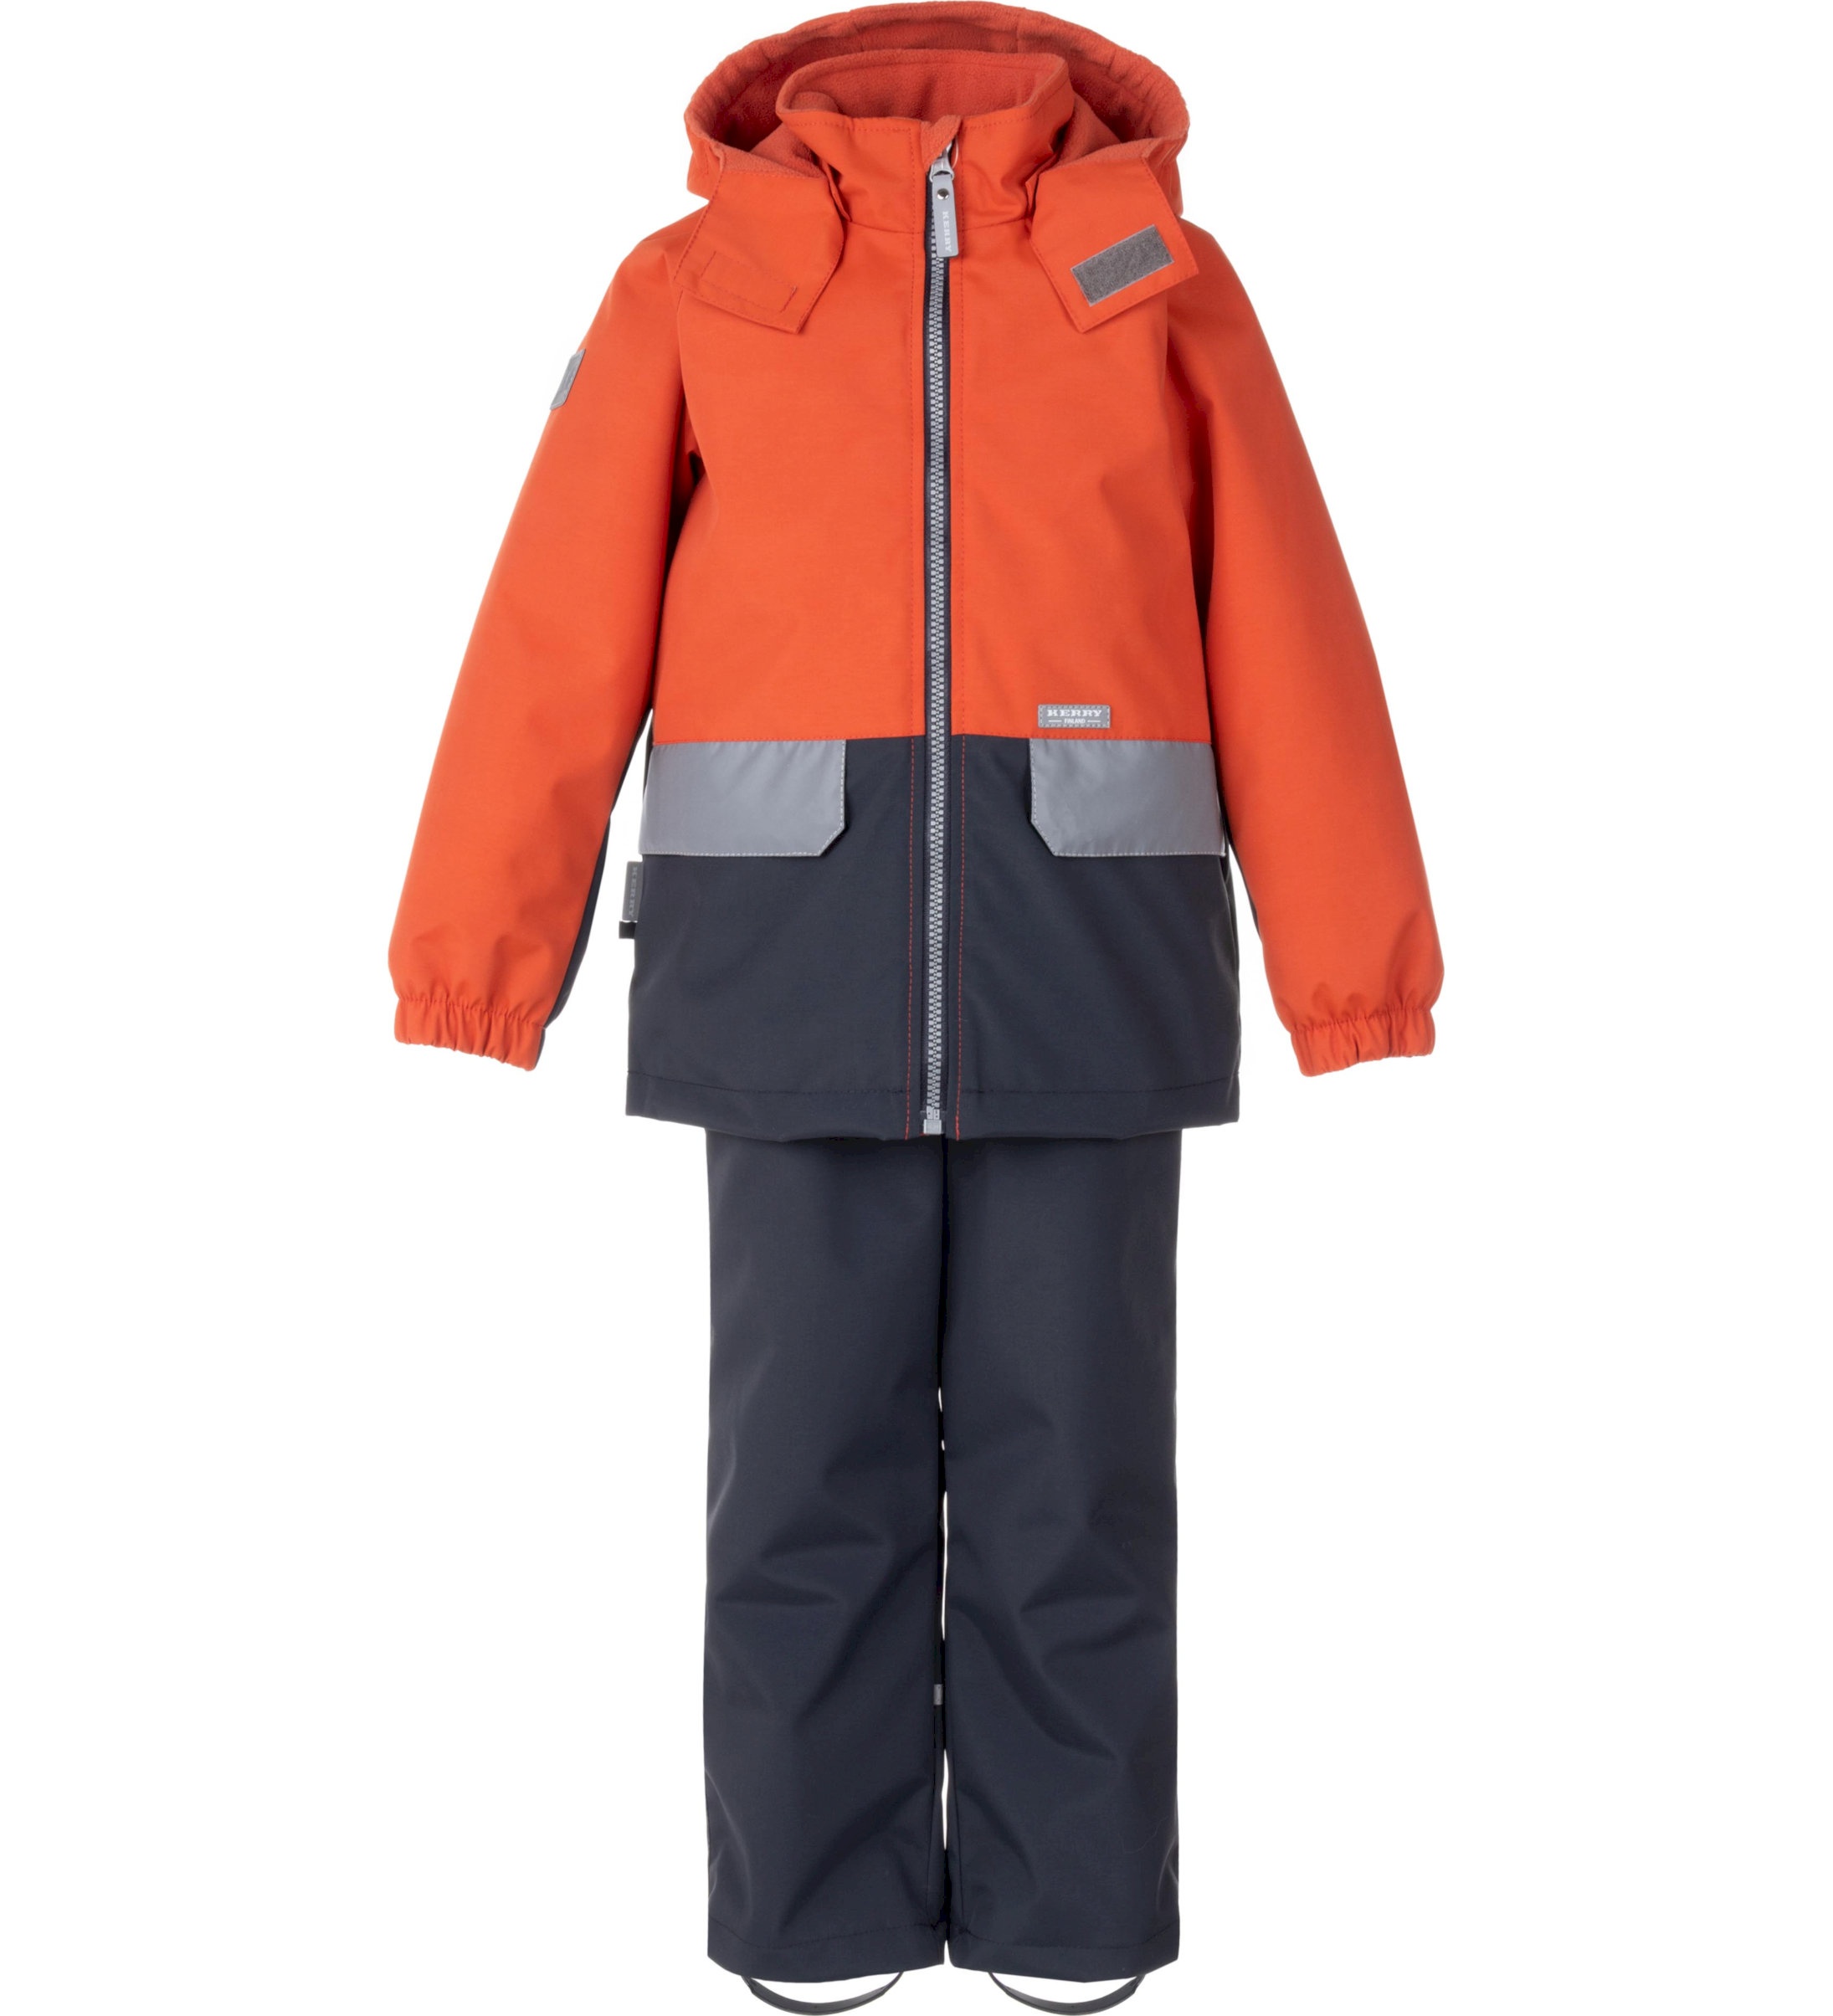 Комплект верхней одежды детский KERRY K24020, оранжевый; серый, 128 пылесос bort bac 500 22 900 вт сухая влажная уборка 22 л серый